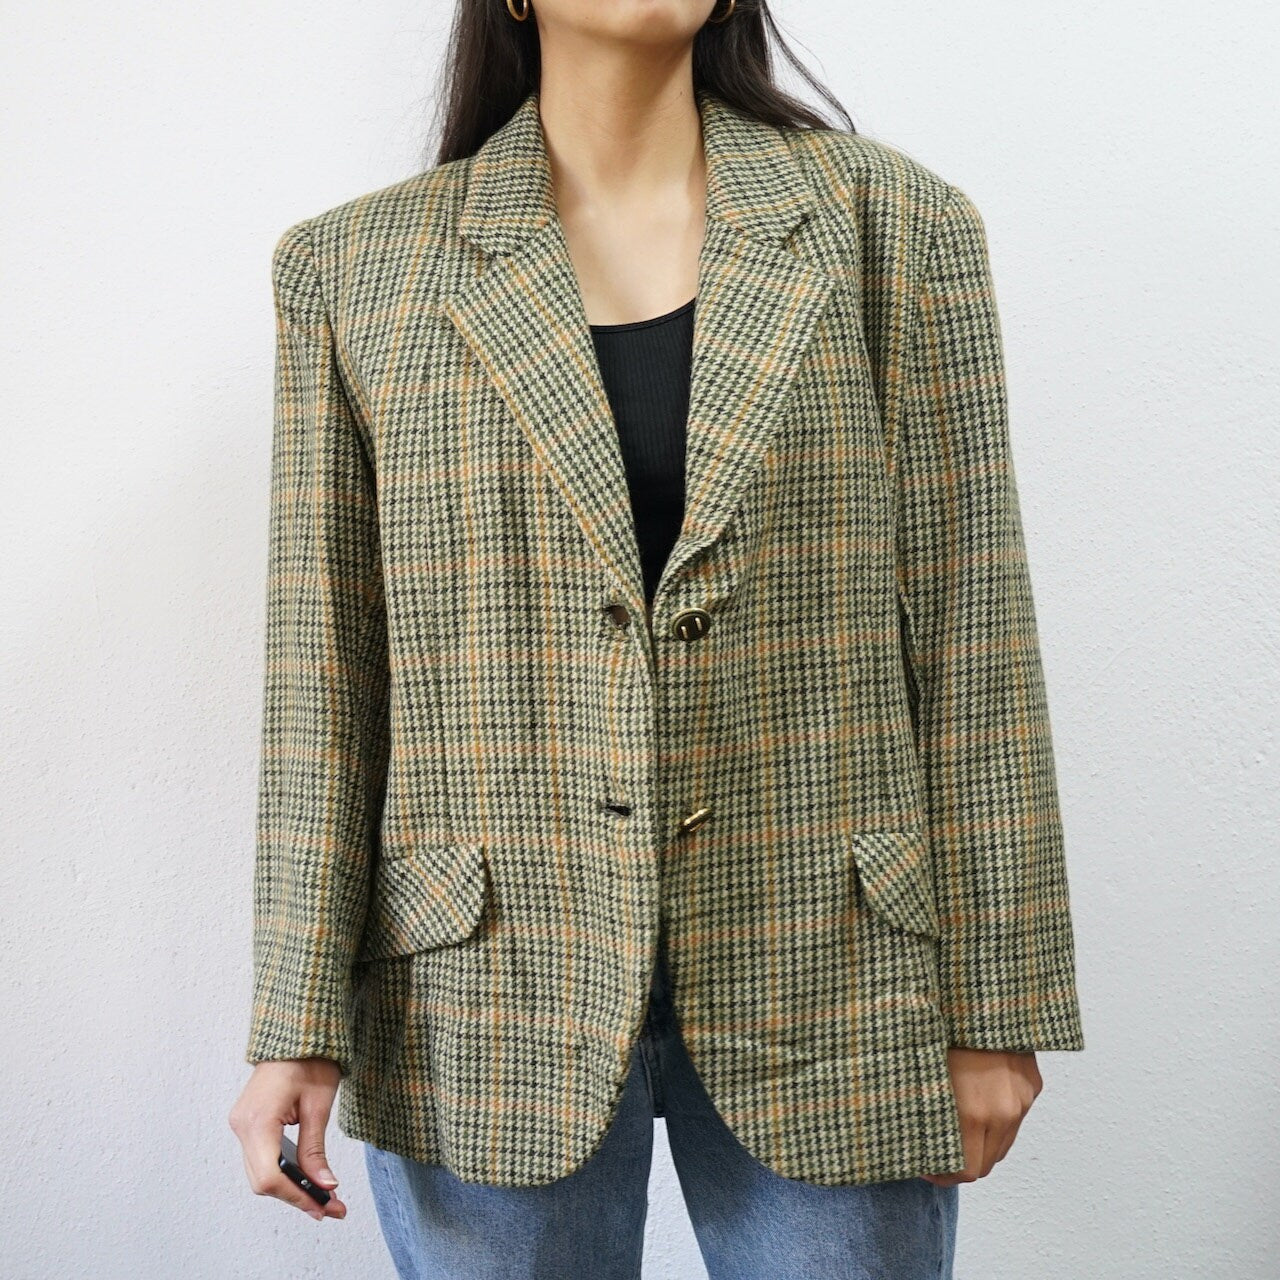 Vintage green yellow Blazer Size M checkered wool jacket shoulder pads blazer 90s blazer jacket